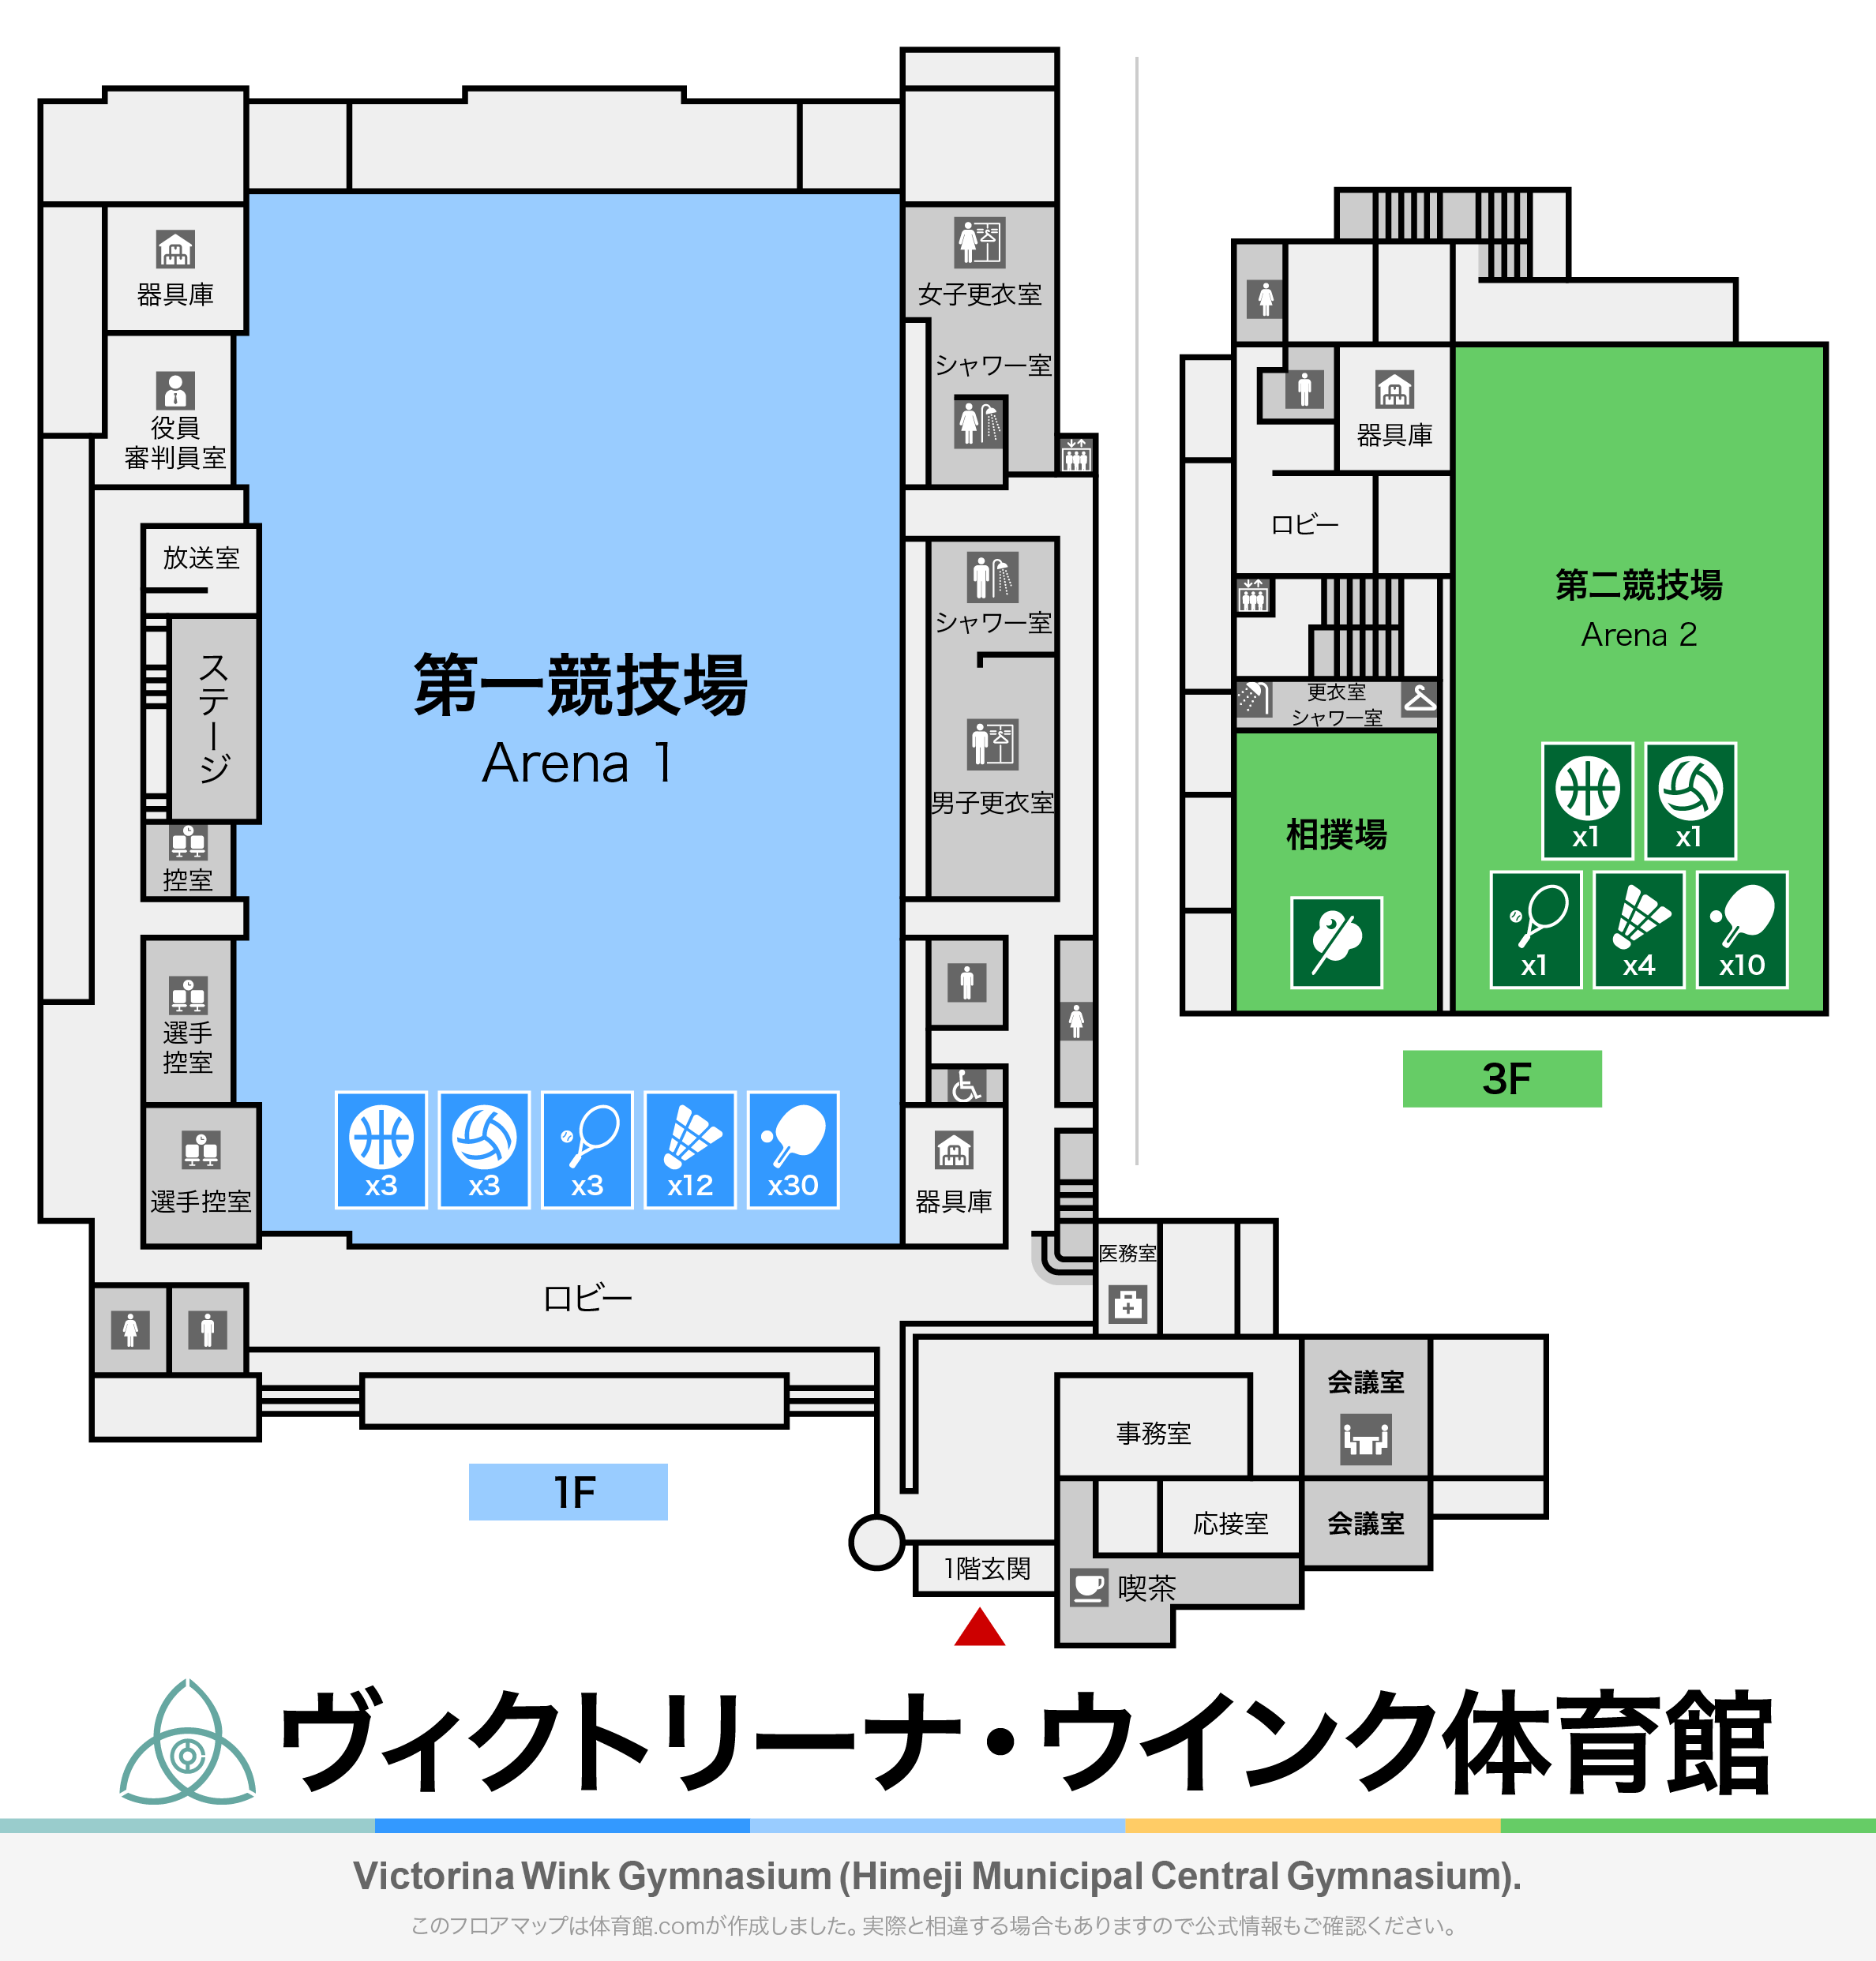 ヴィクトリーナ・ウインク体育館（姫路市立中央体育館）のフロアマップ